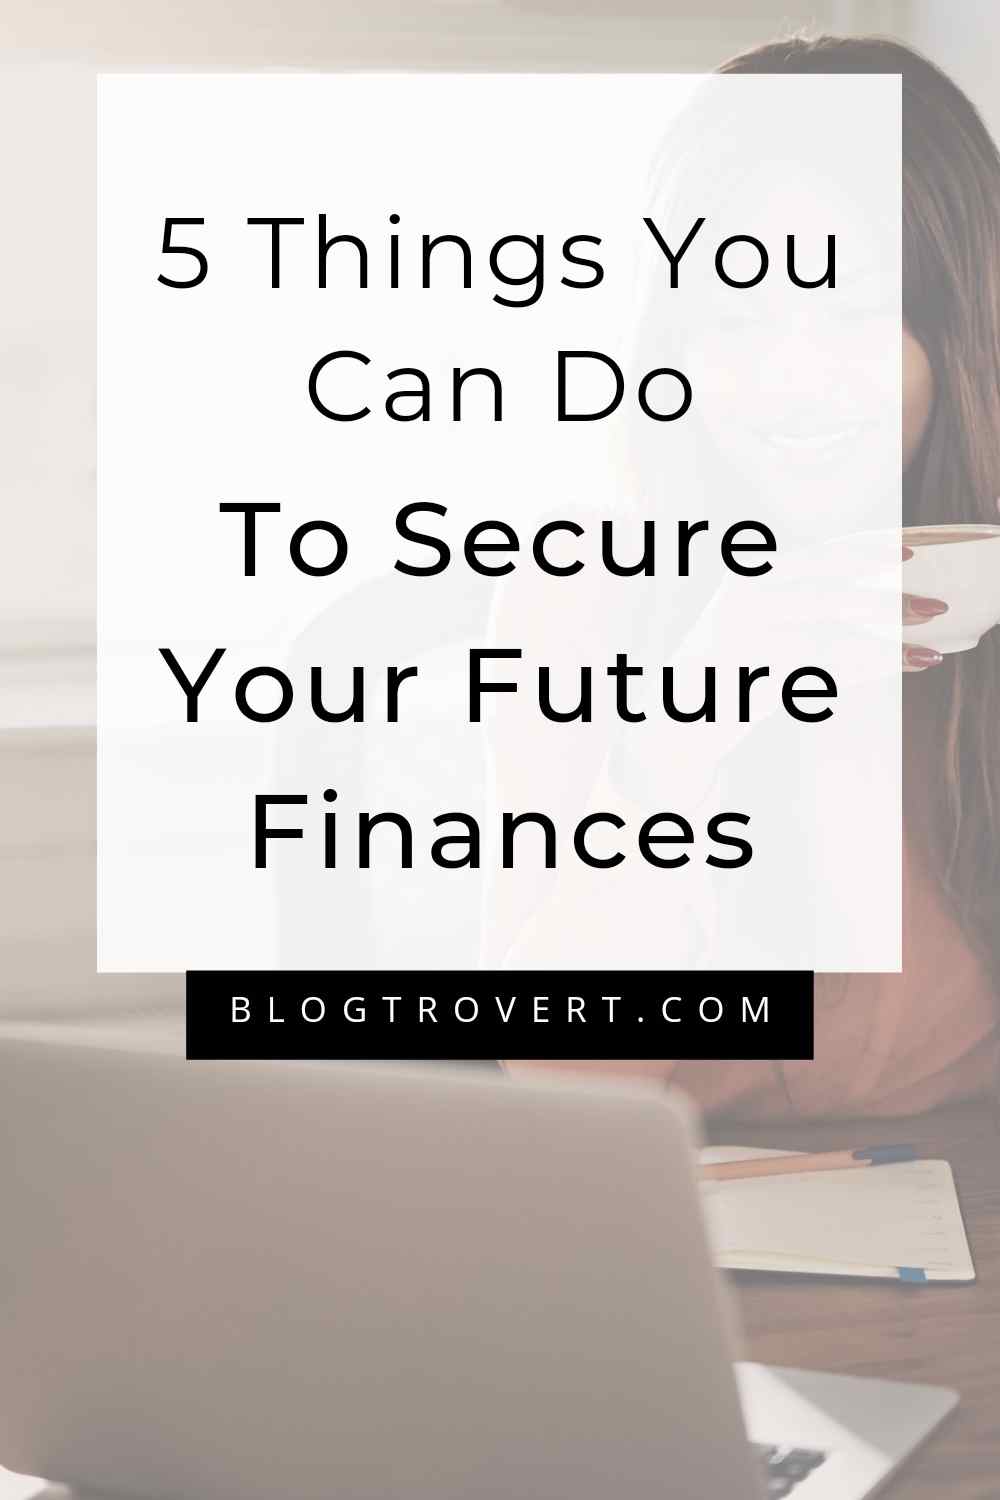 Secure your future finances